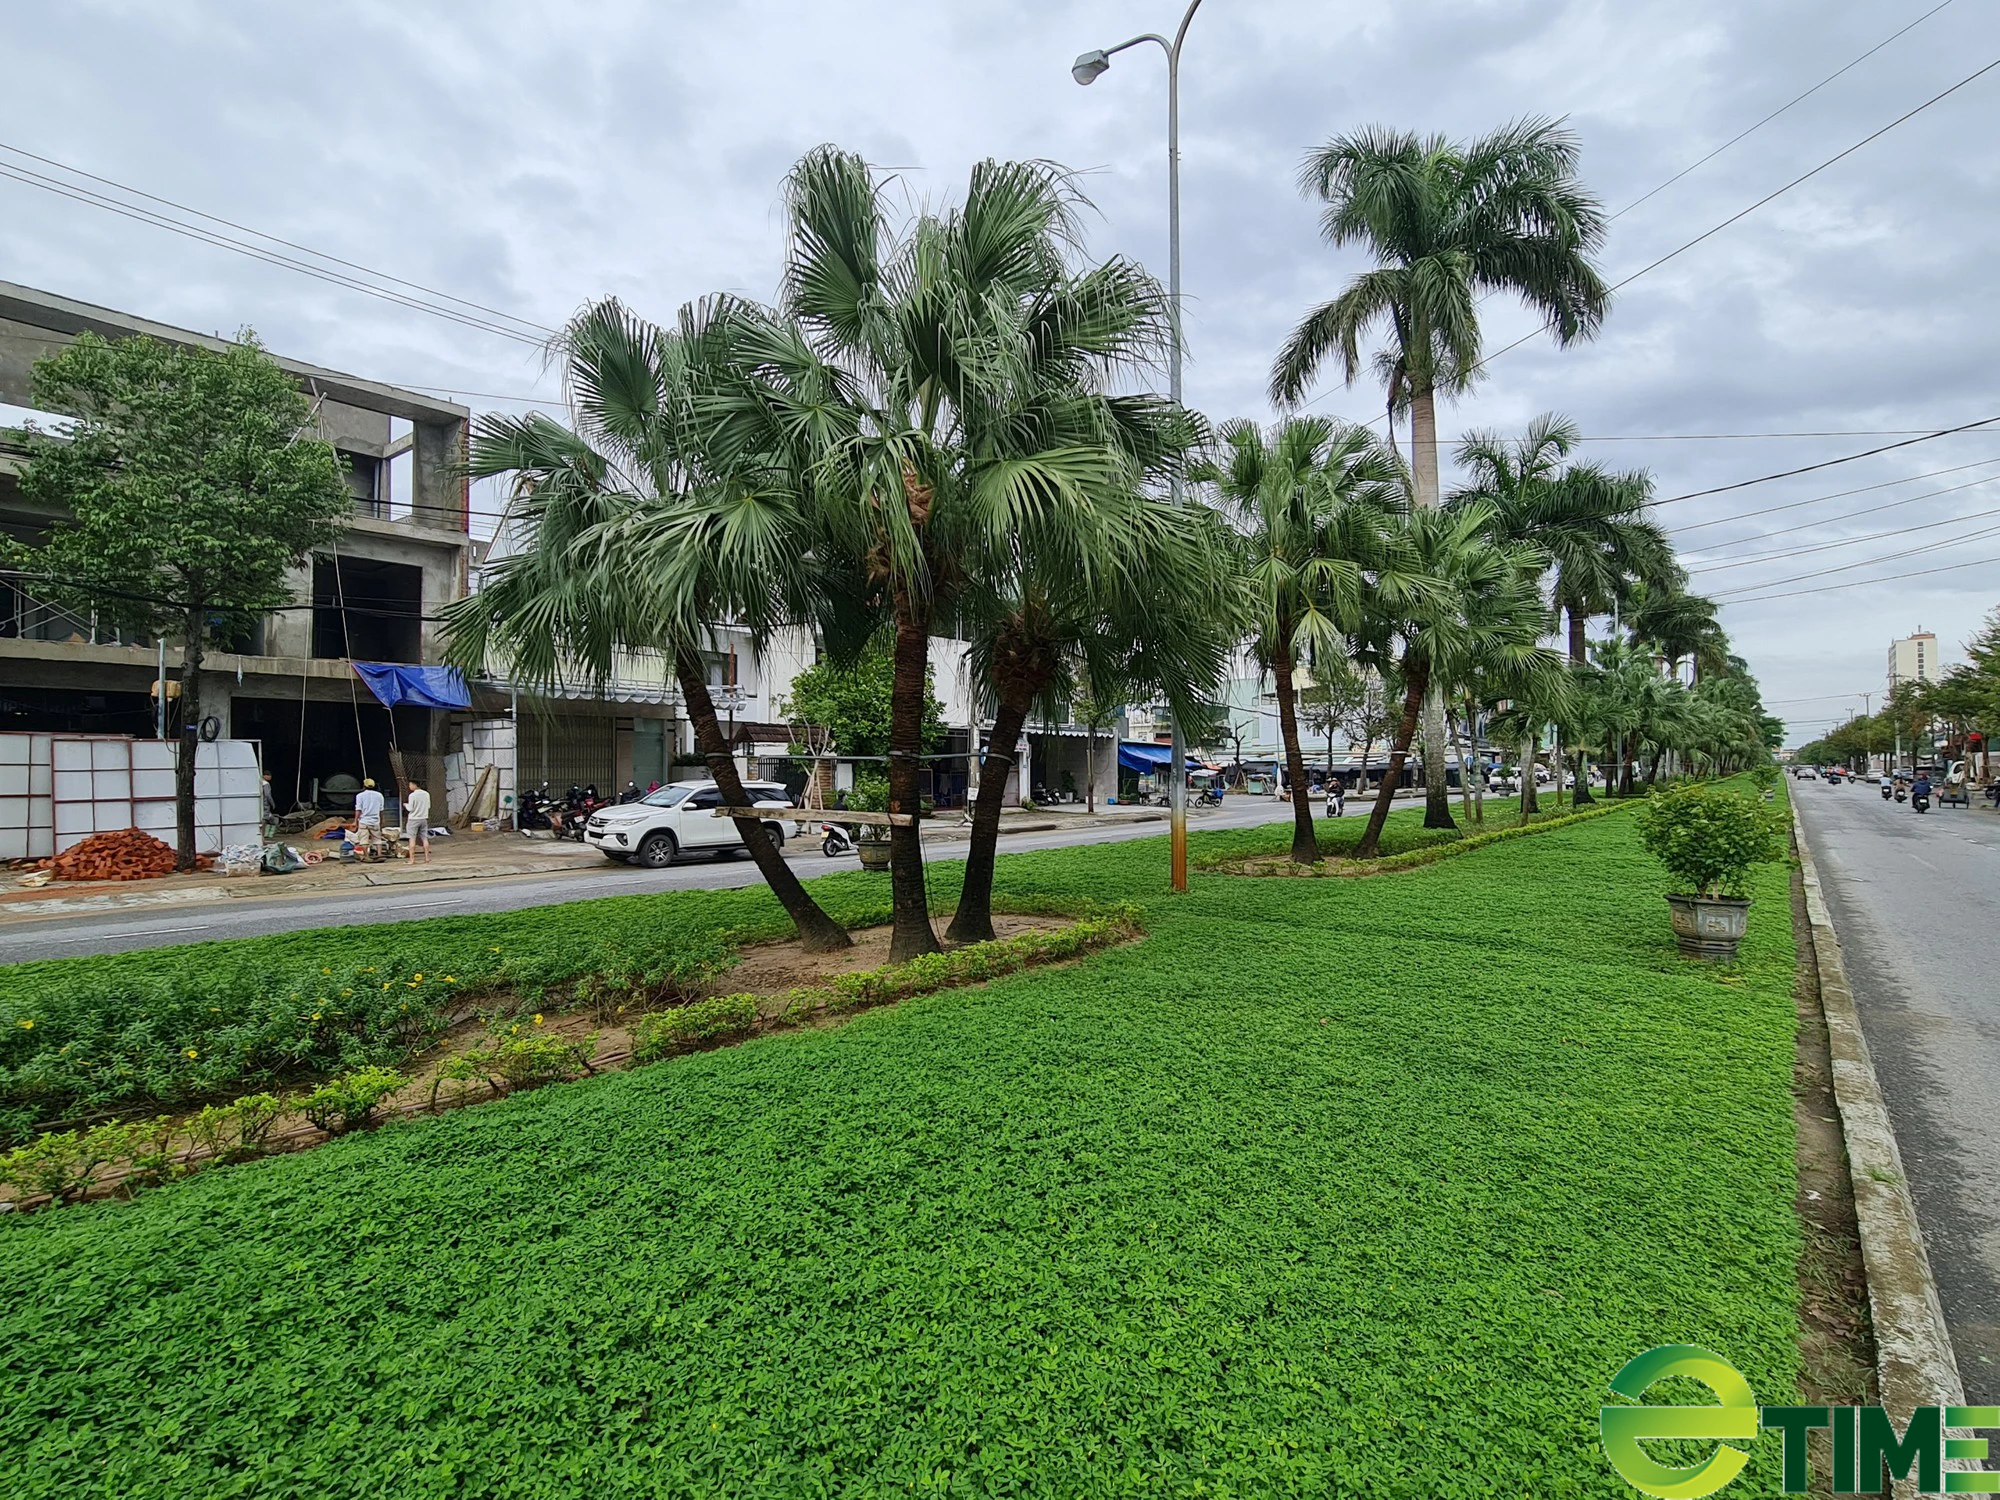  Tỉnh Quảng Nam “nghiêm cấm” dùng thuốc trừ cỏ trên các công trình giao thông  - Ảnh 1.